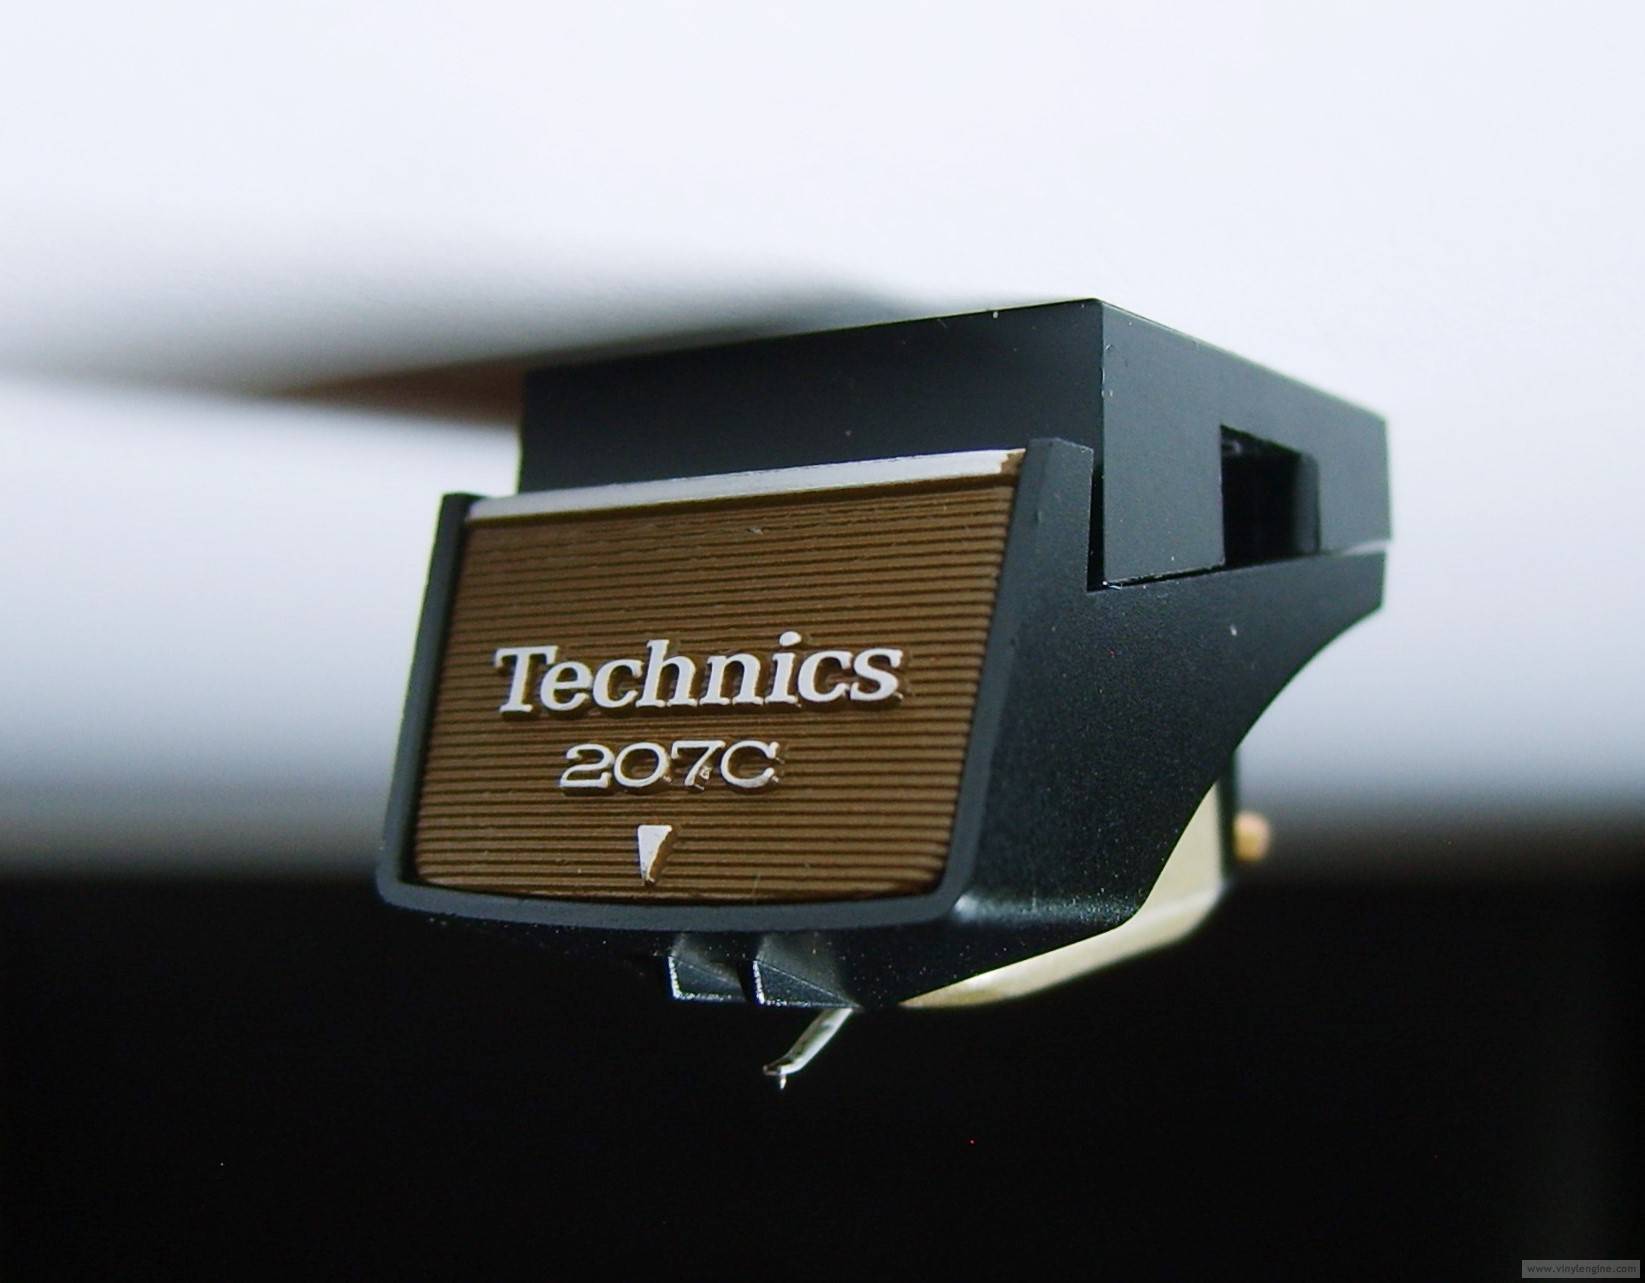 Technics EPC-207C